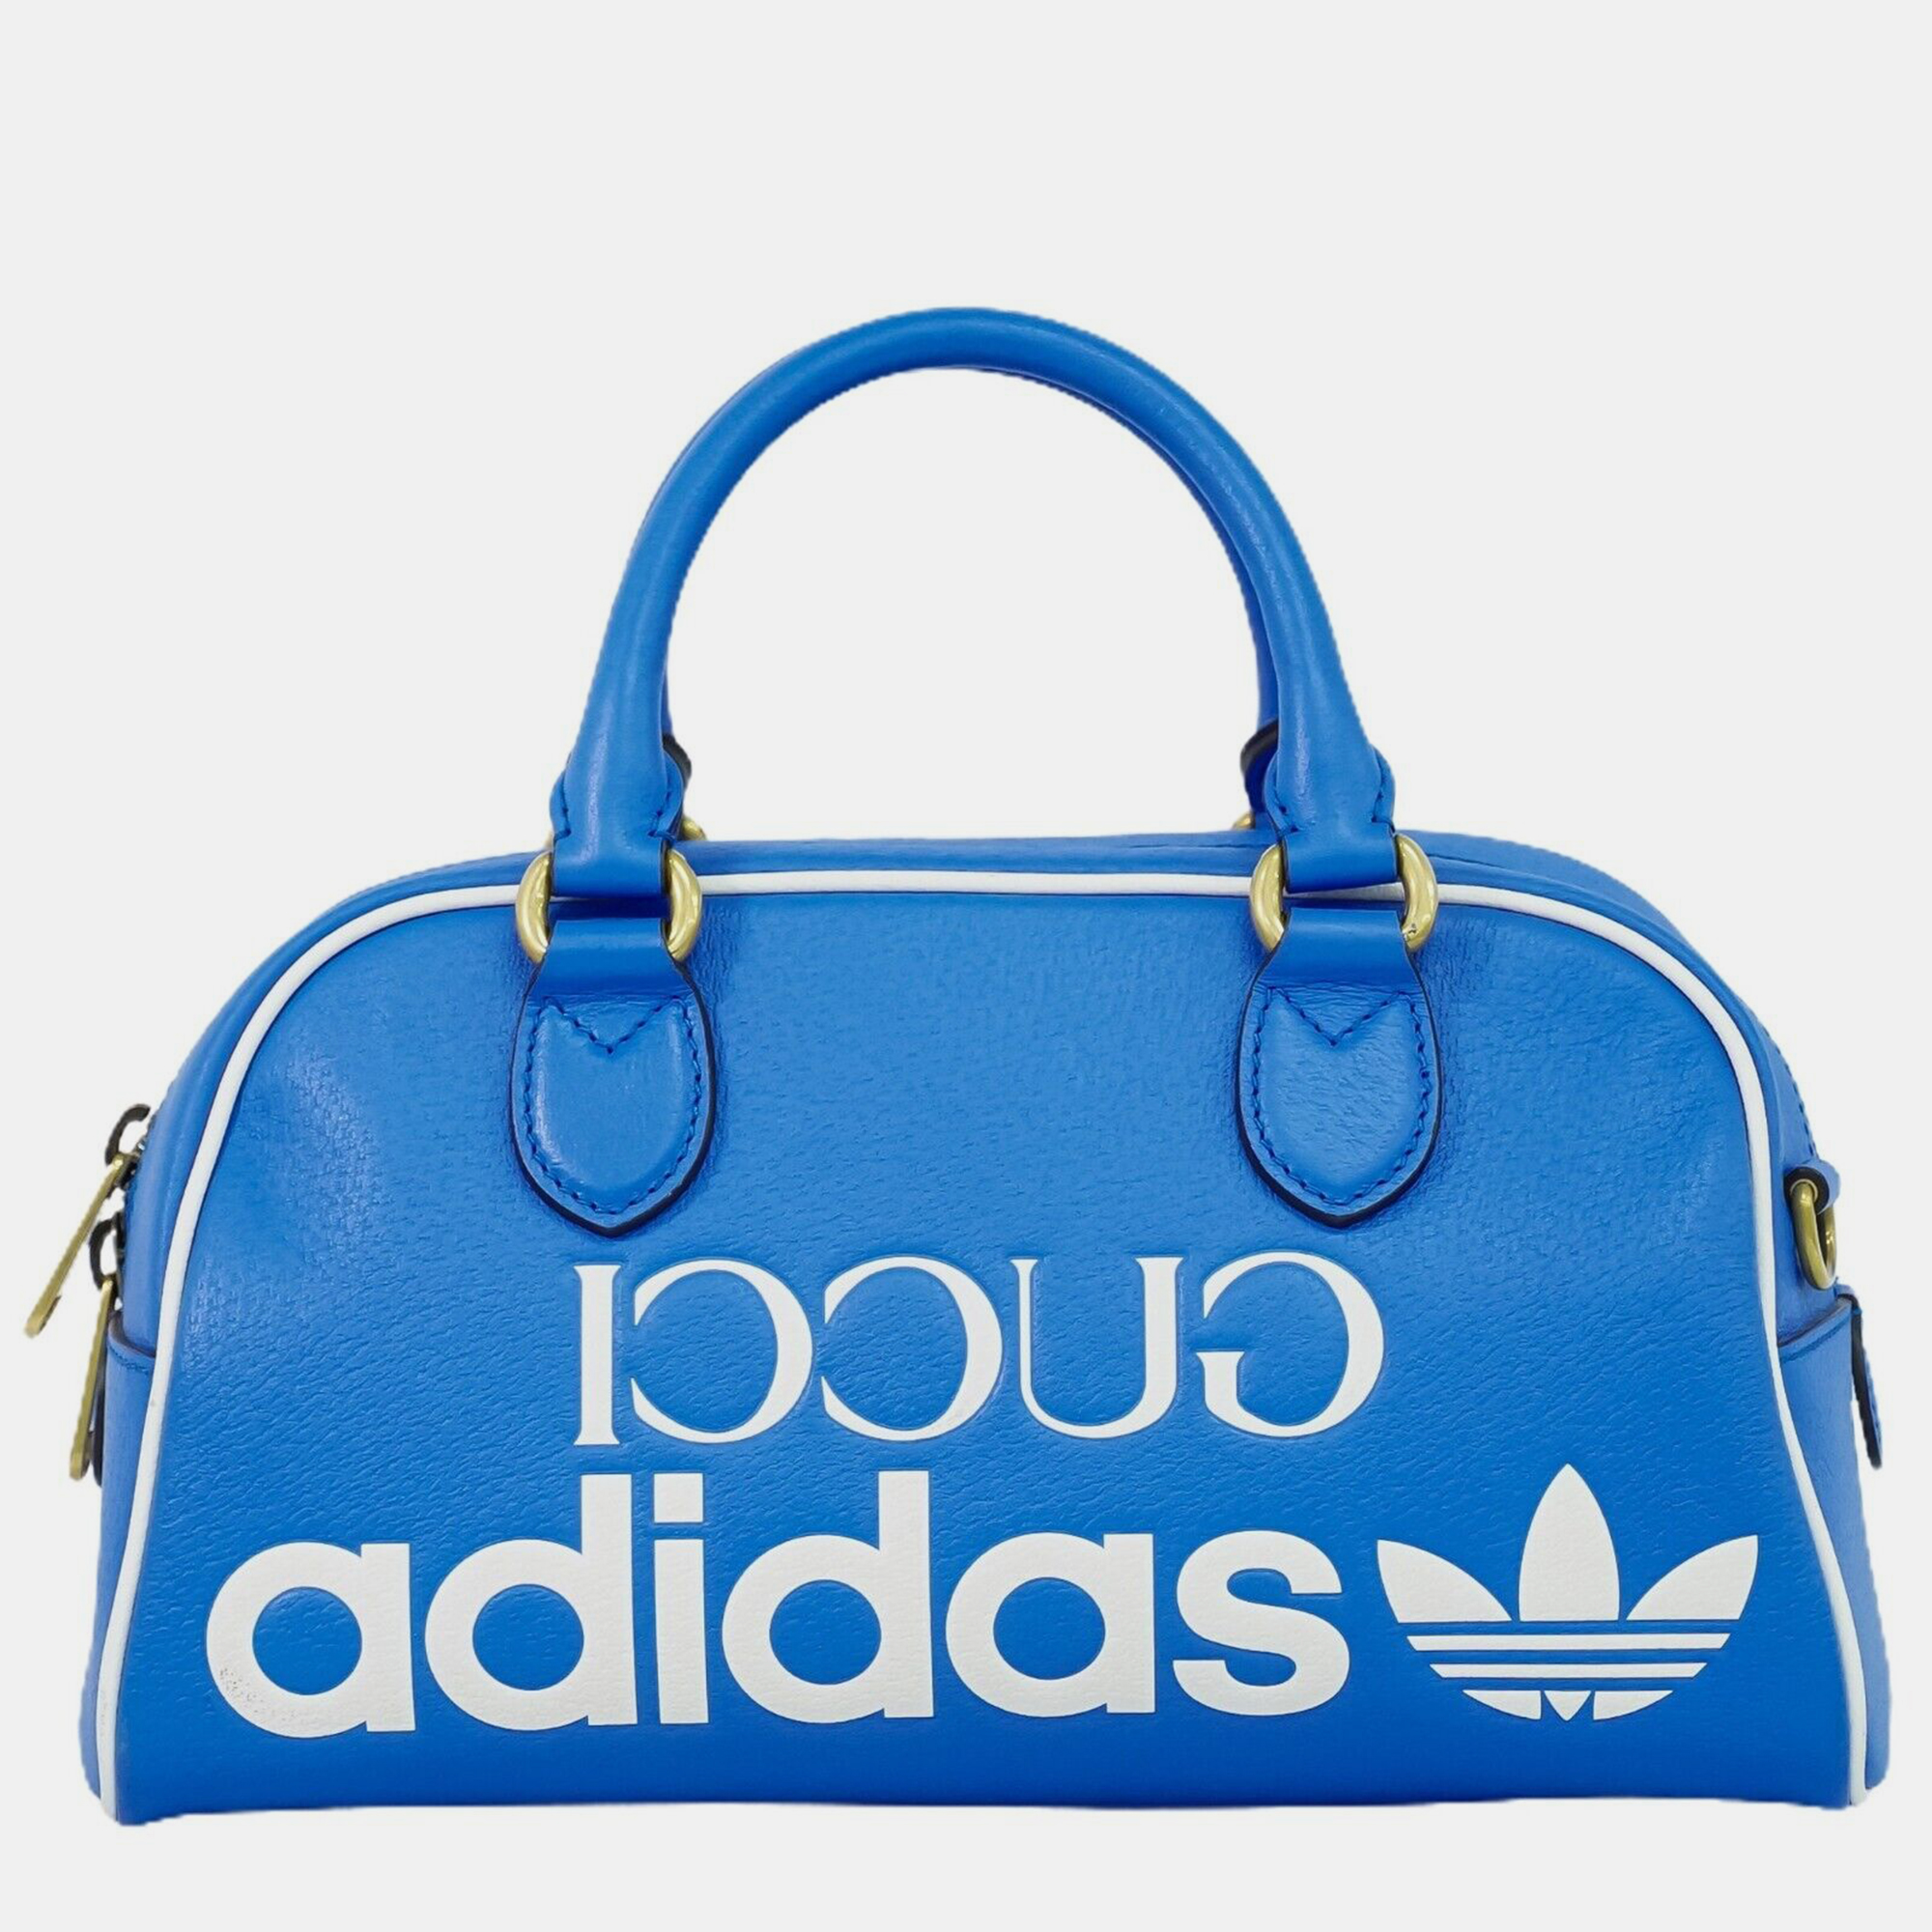 Gucci x adidas blue leather bowling handbag